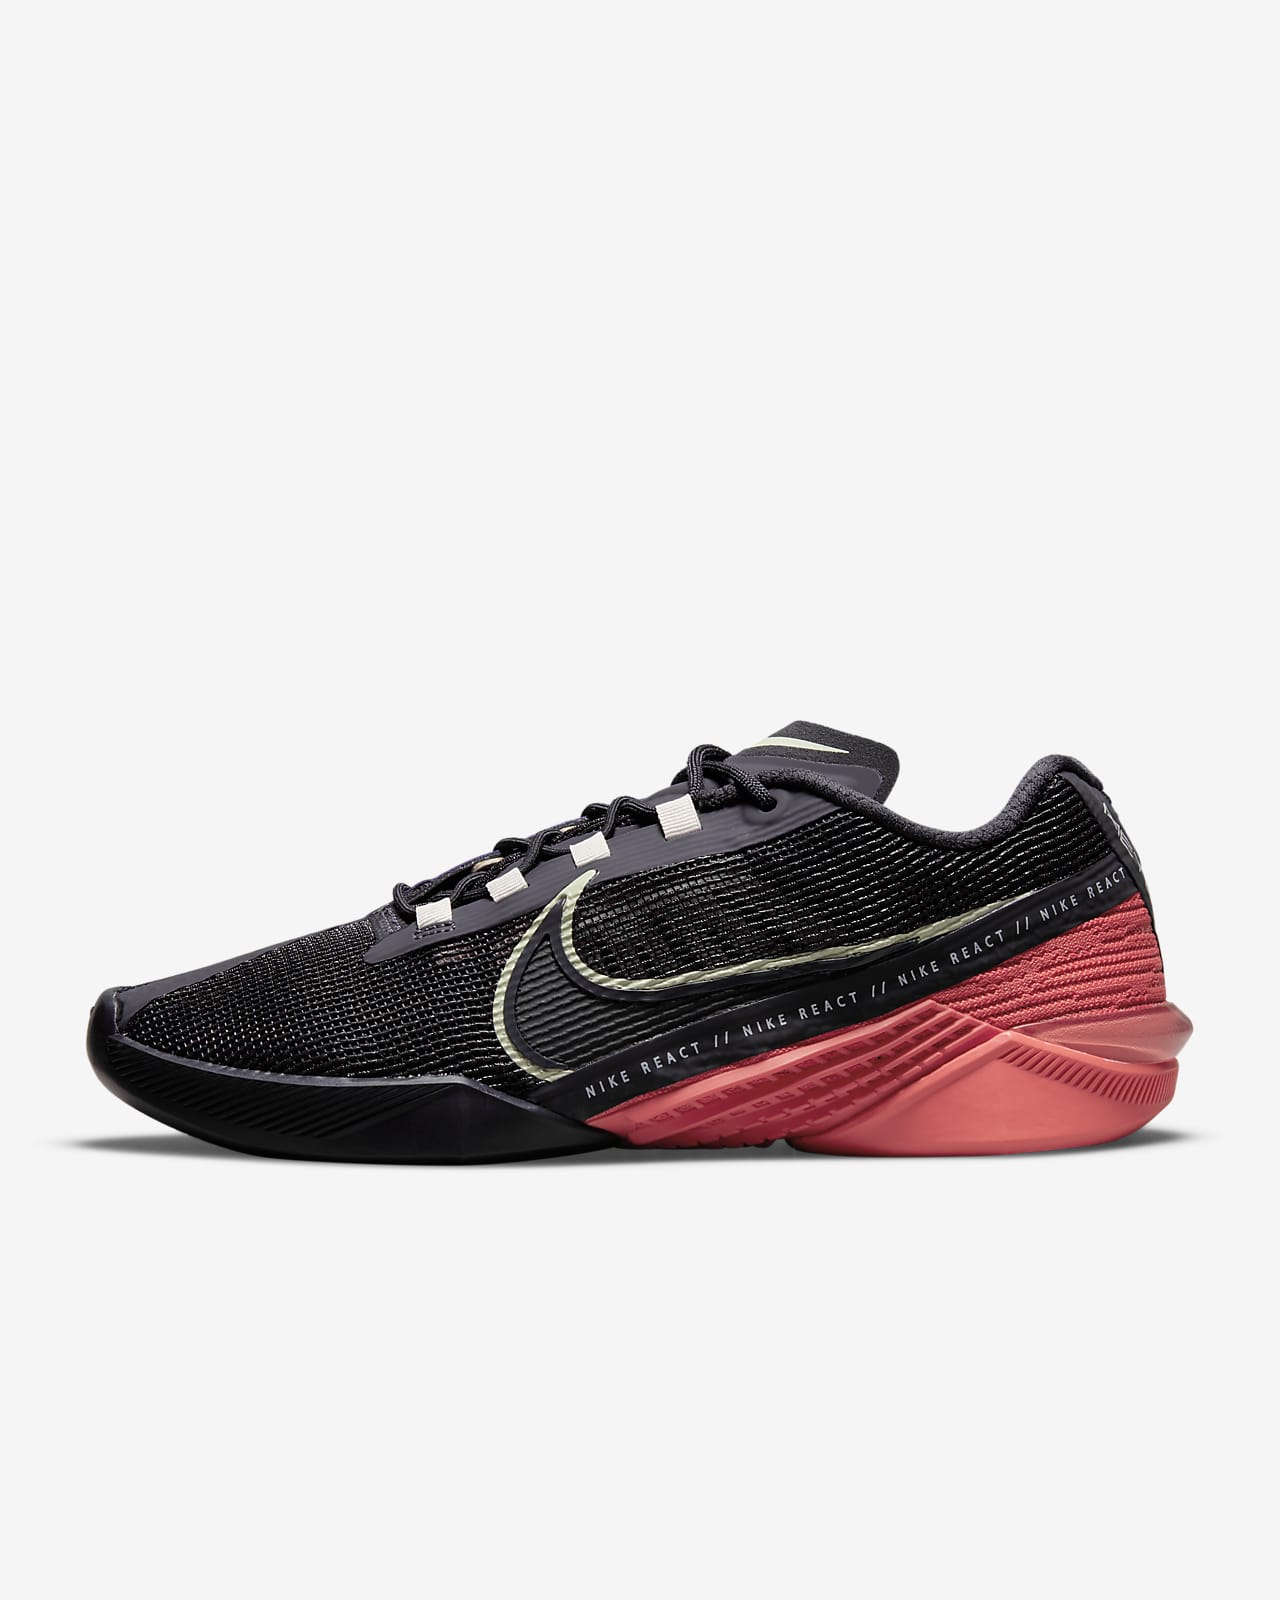 Nike React Metcon Turbo Women's Training Shoe